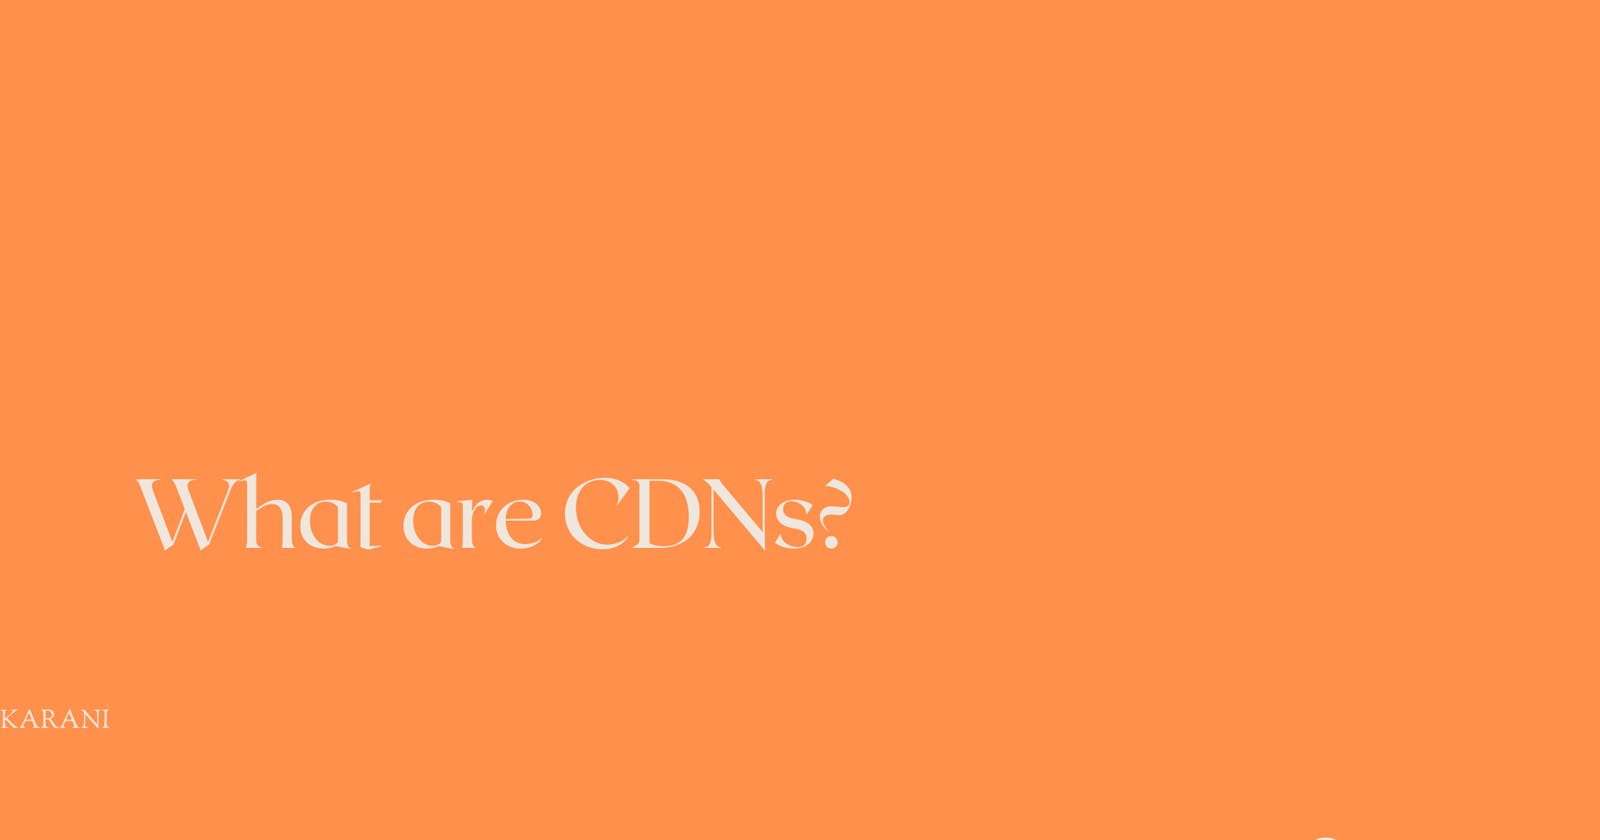 What Are Cdns?